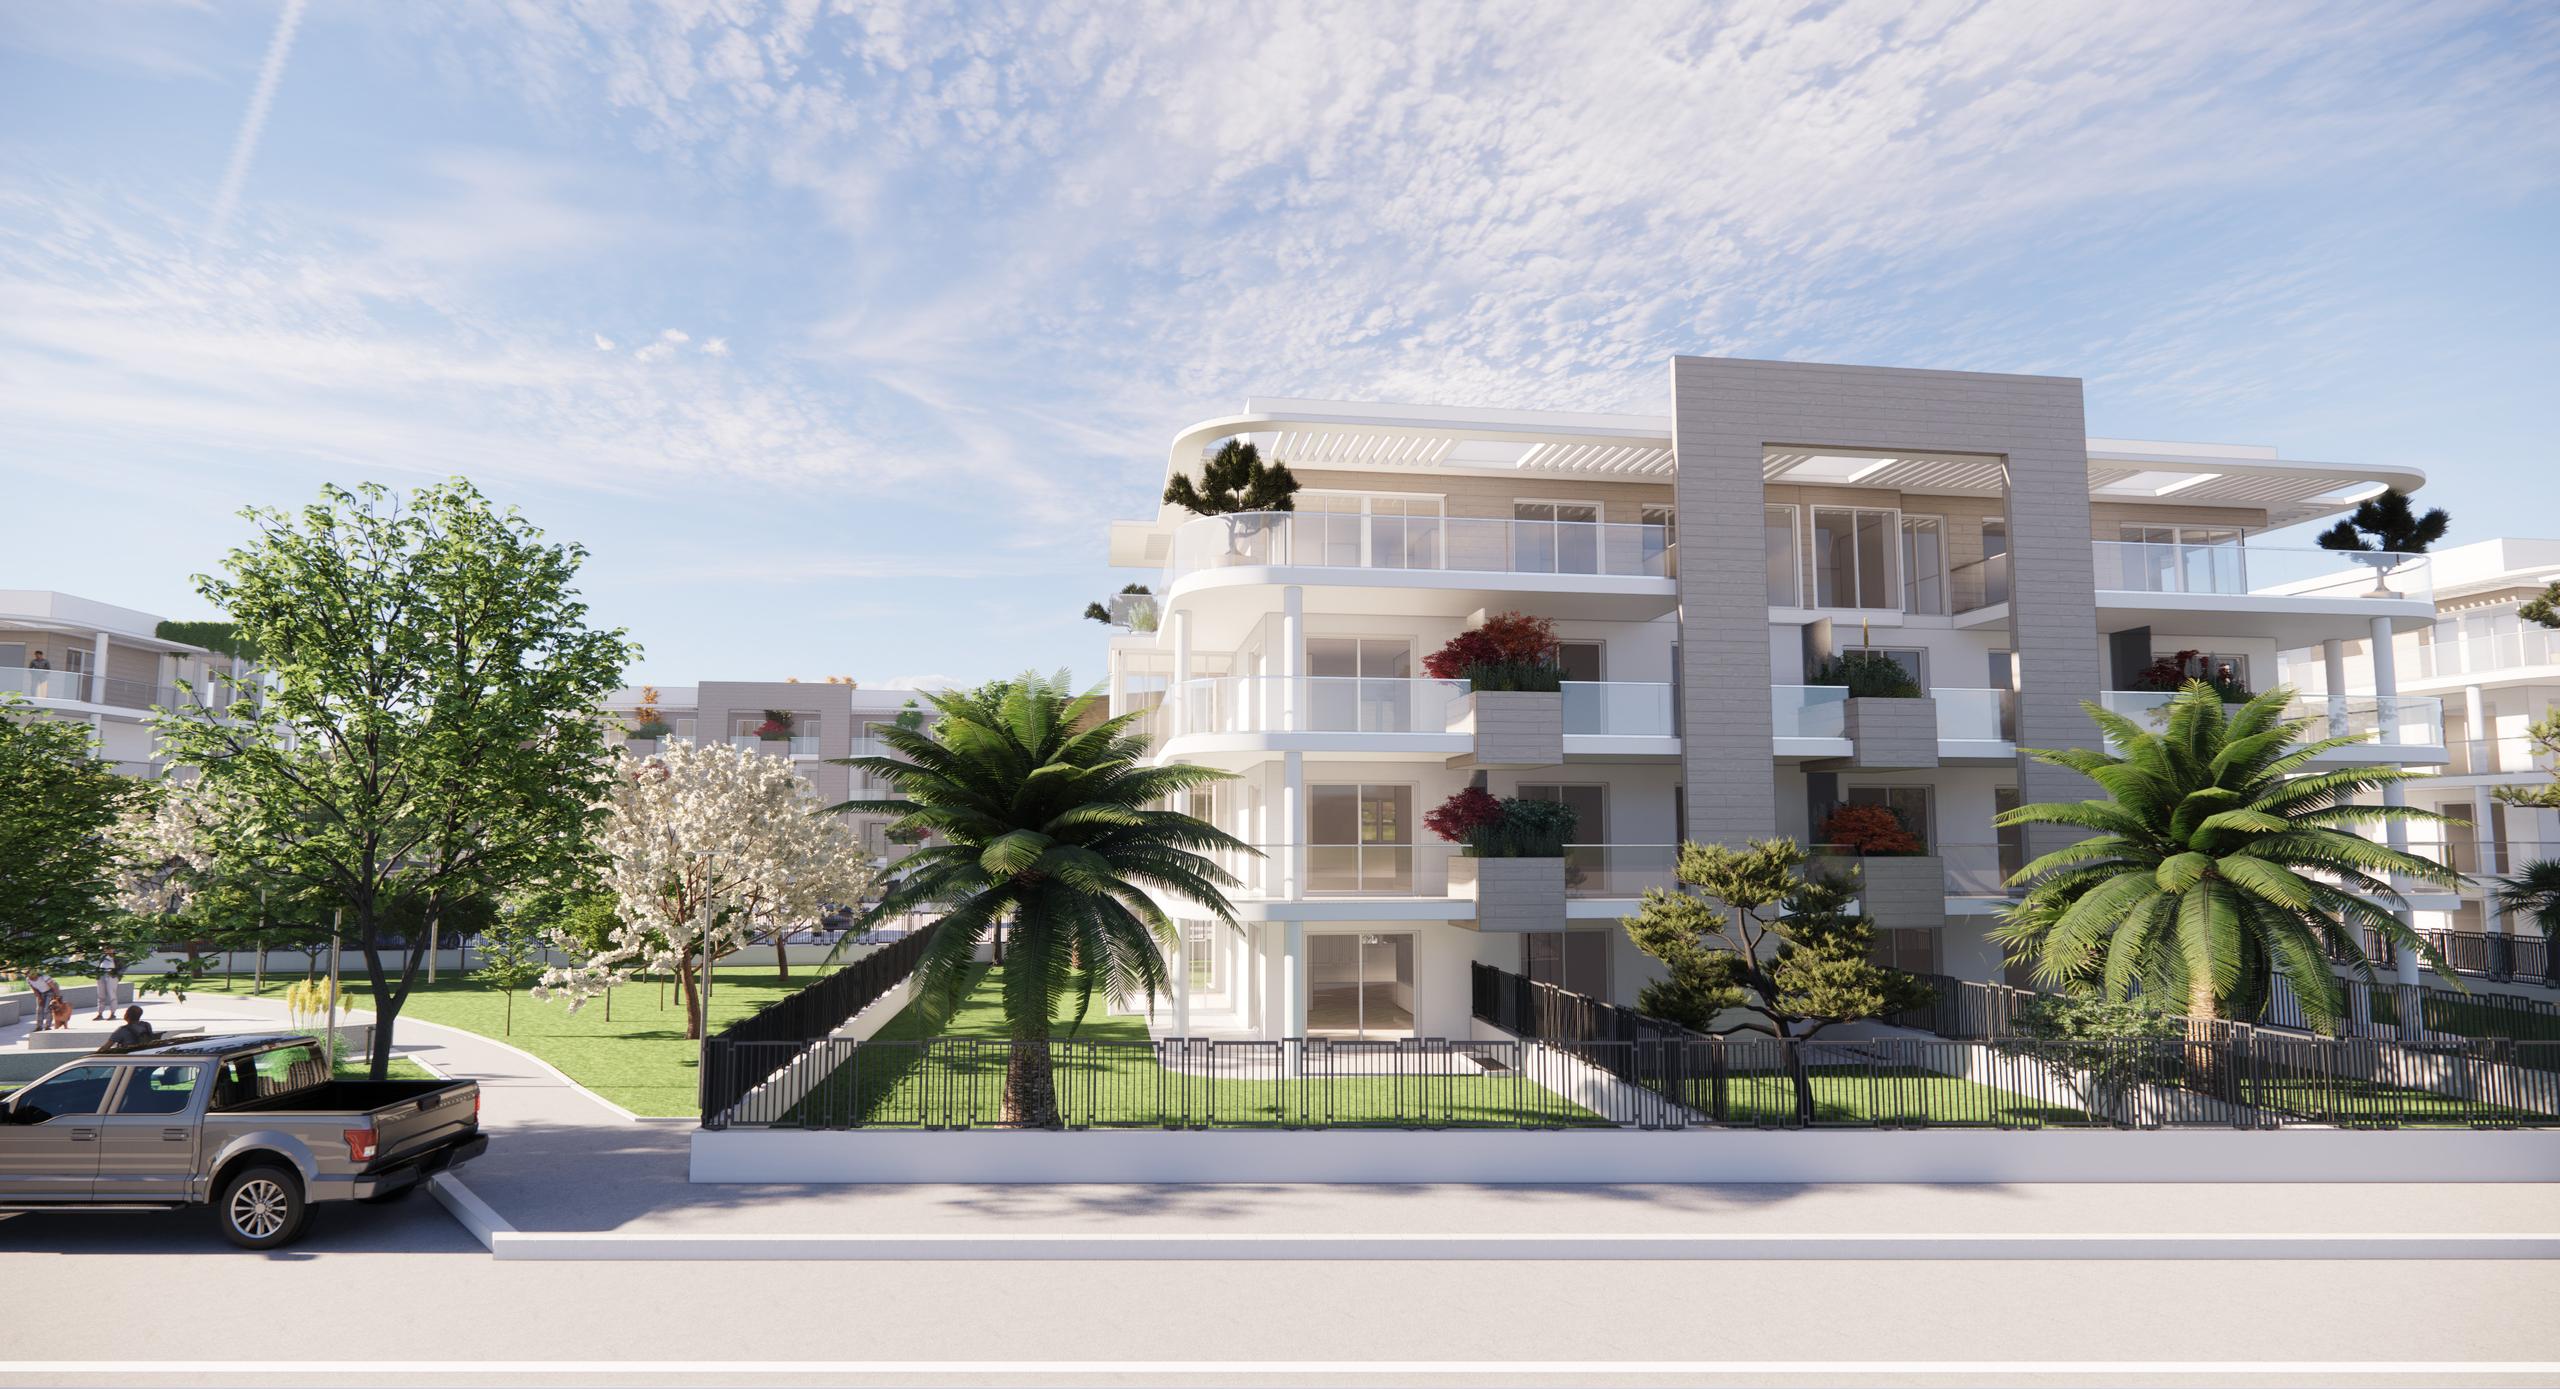 Nuova costruzione Albenga - case al mare